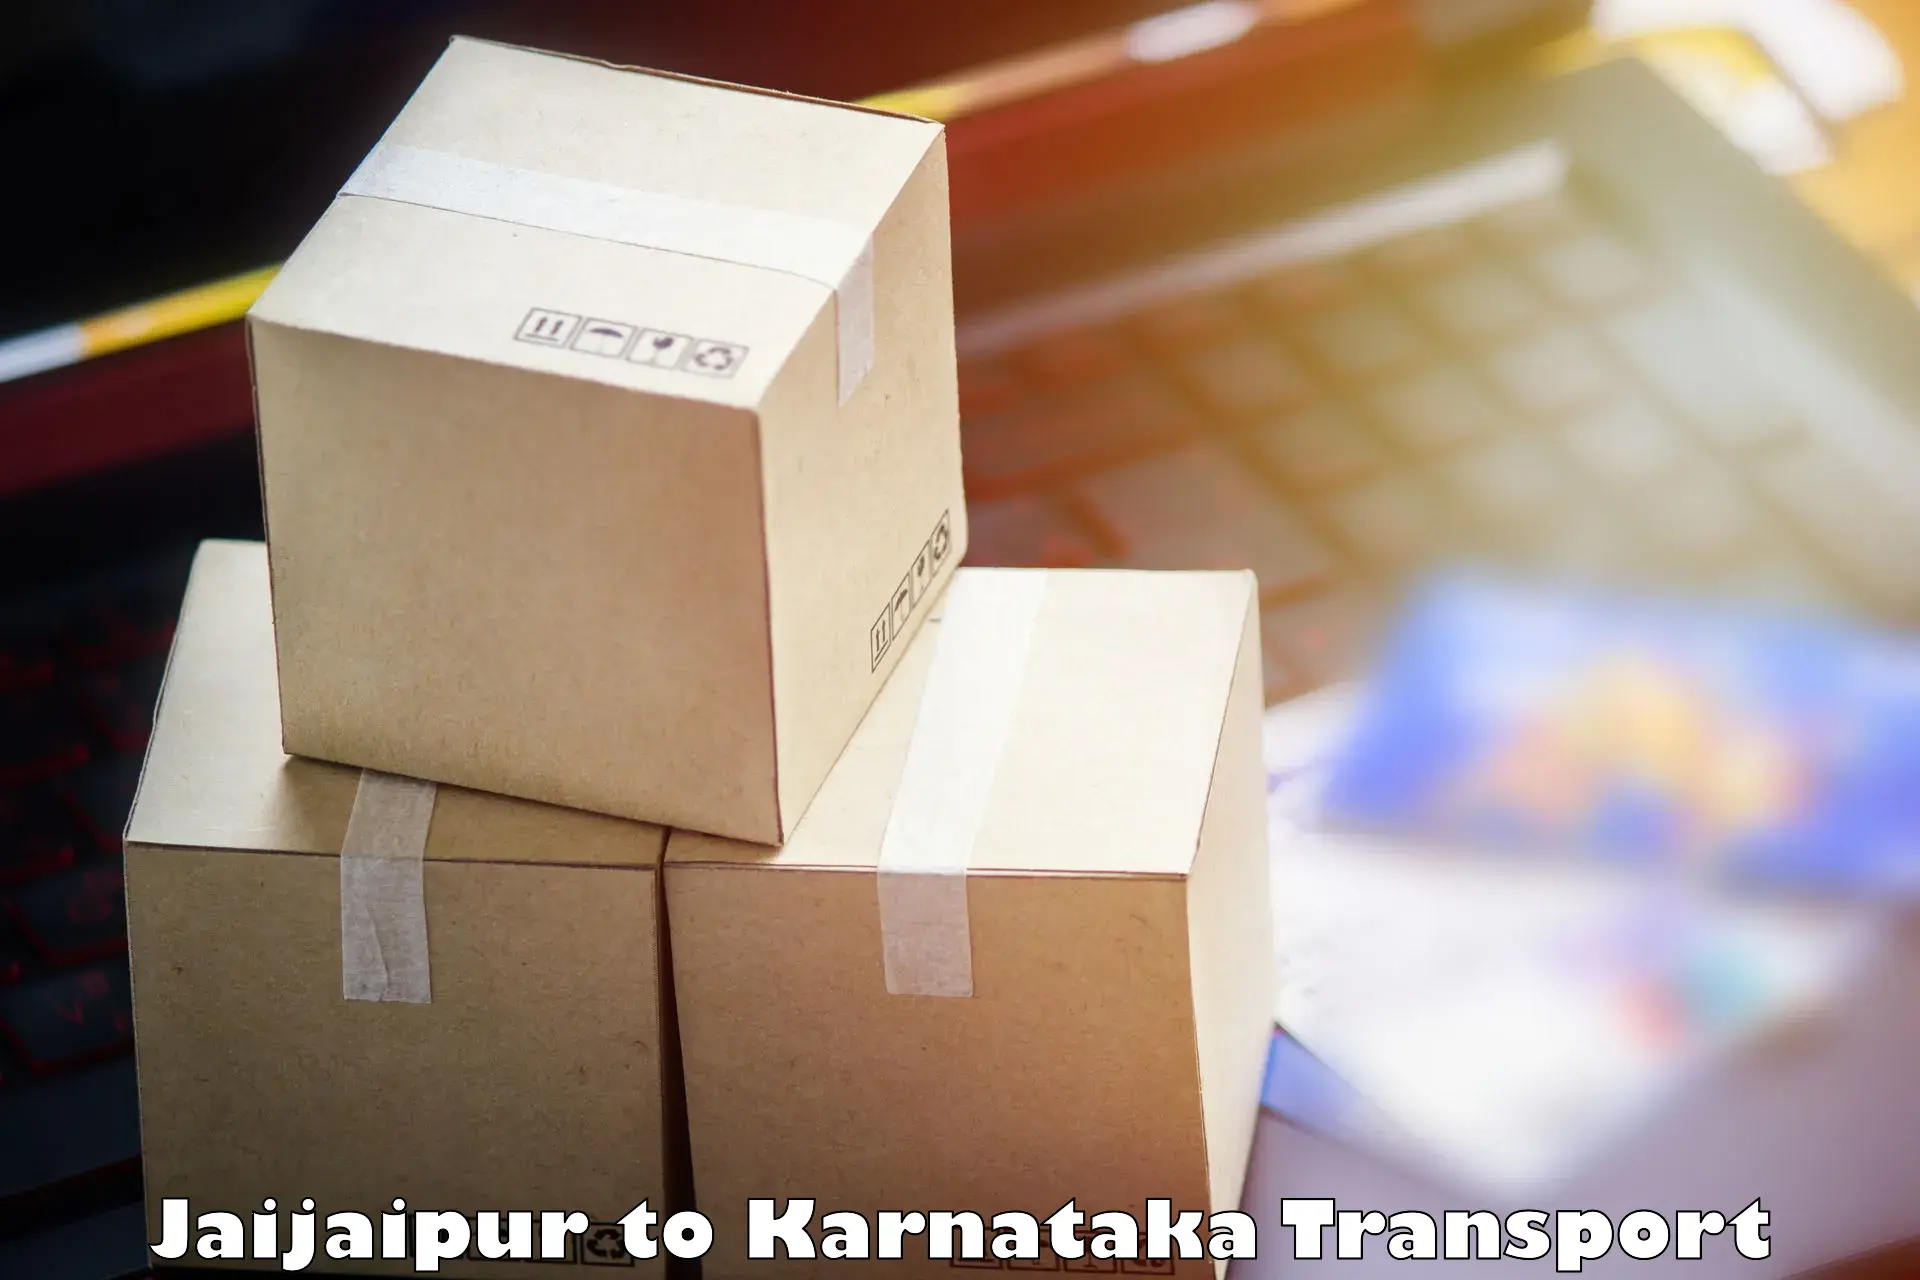 Nationwide transport services Jaijaipur to Kanjarakatte